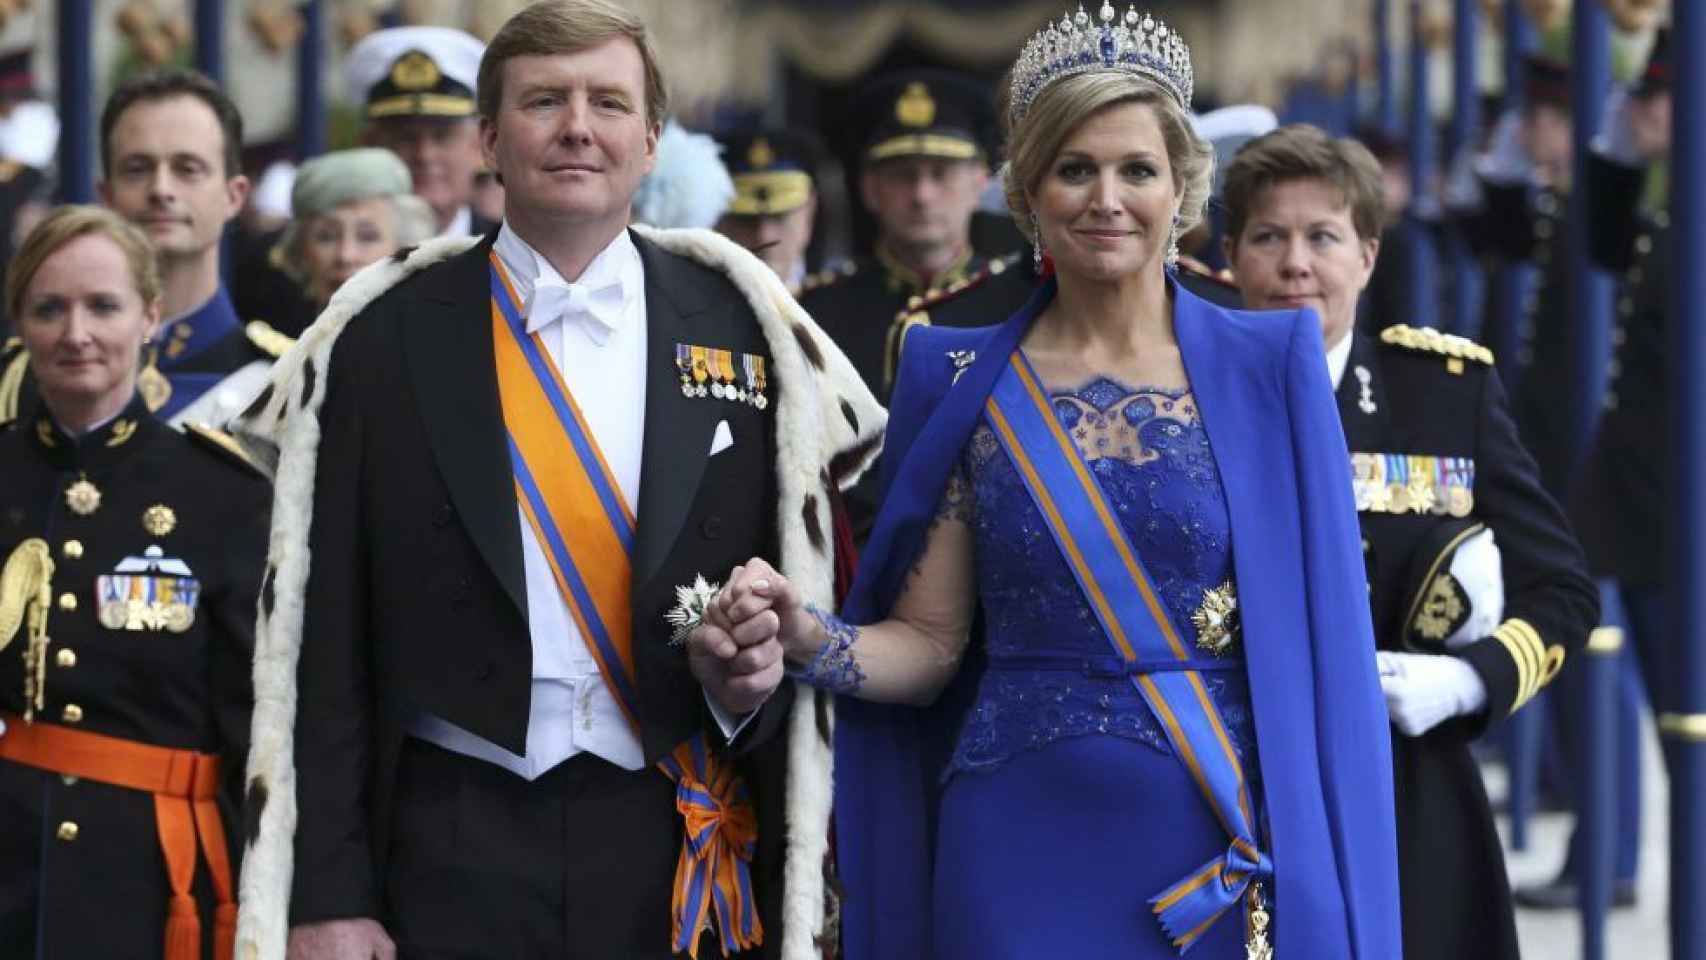 Máxima de Holanda con la capa azul klein de Taminiau en la coronación de Guillermo en 2013.